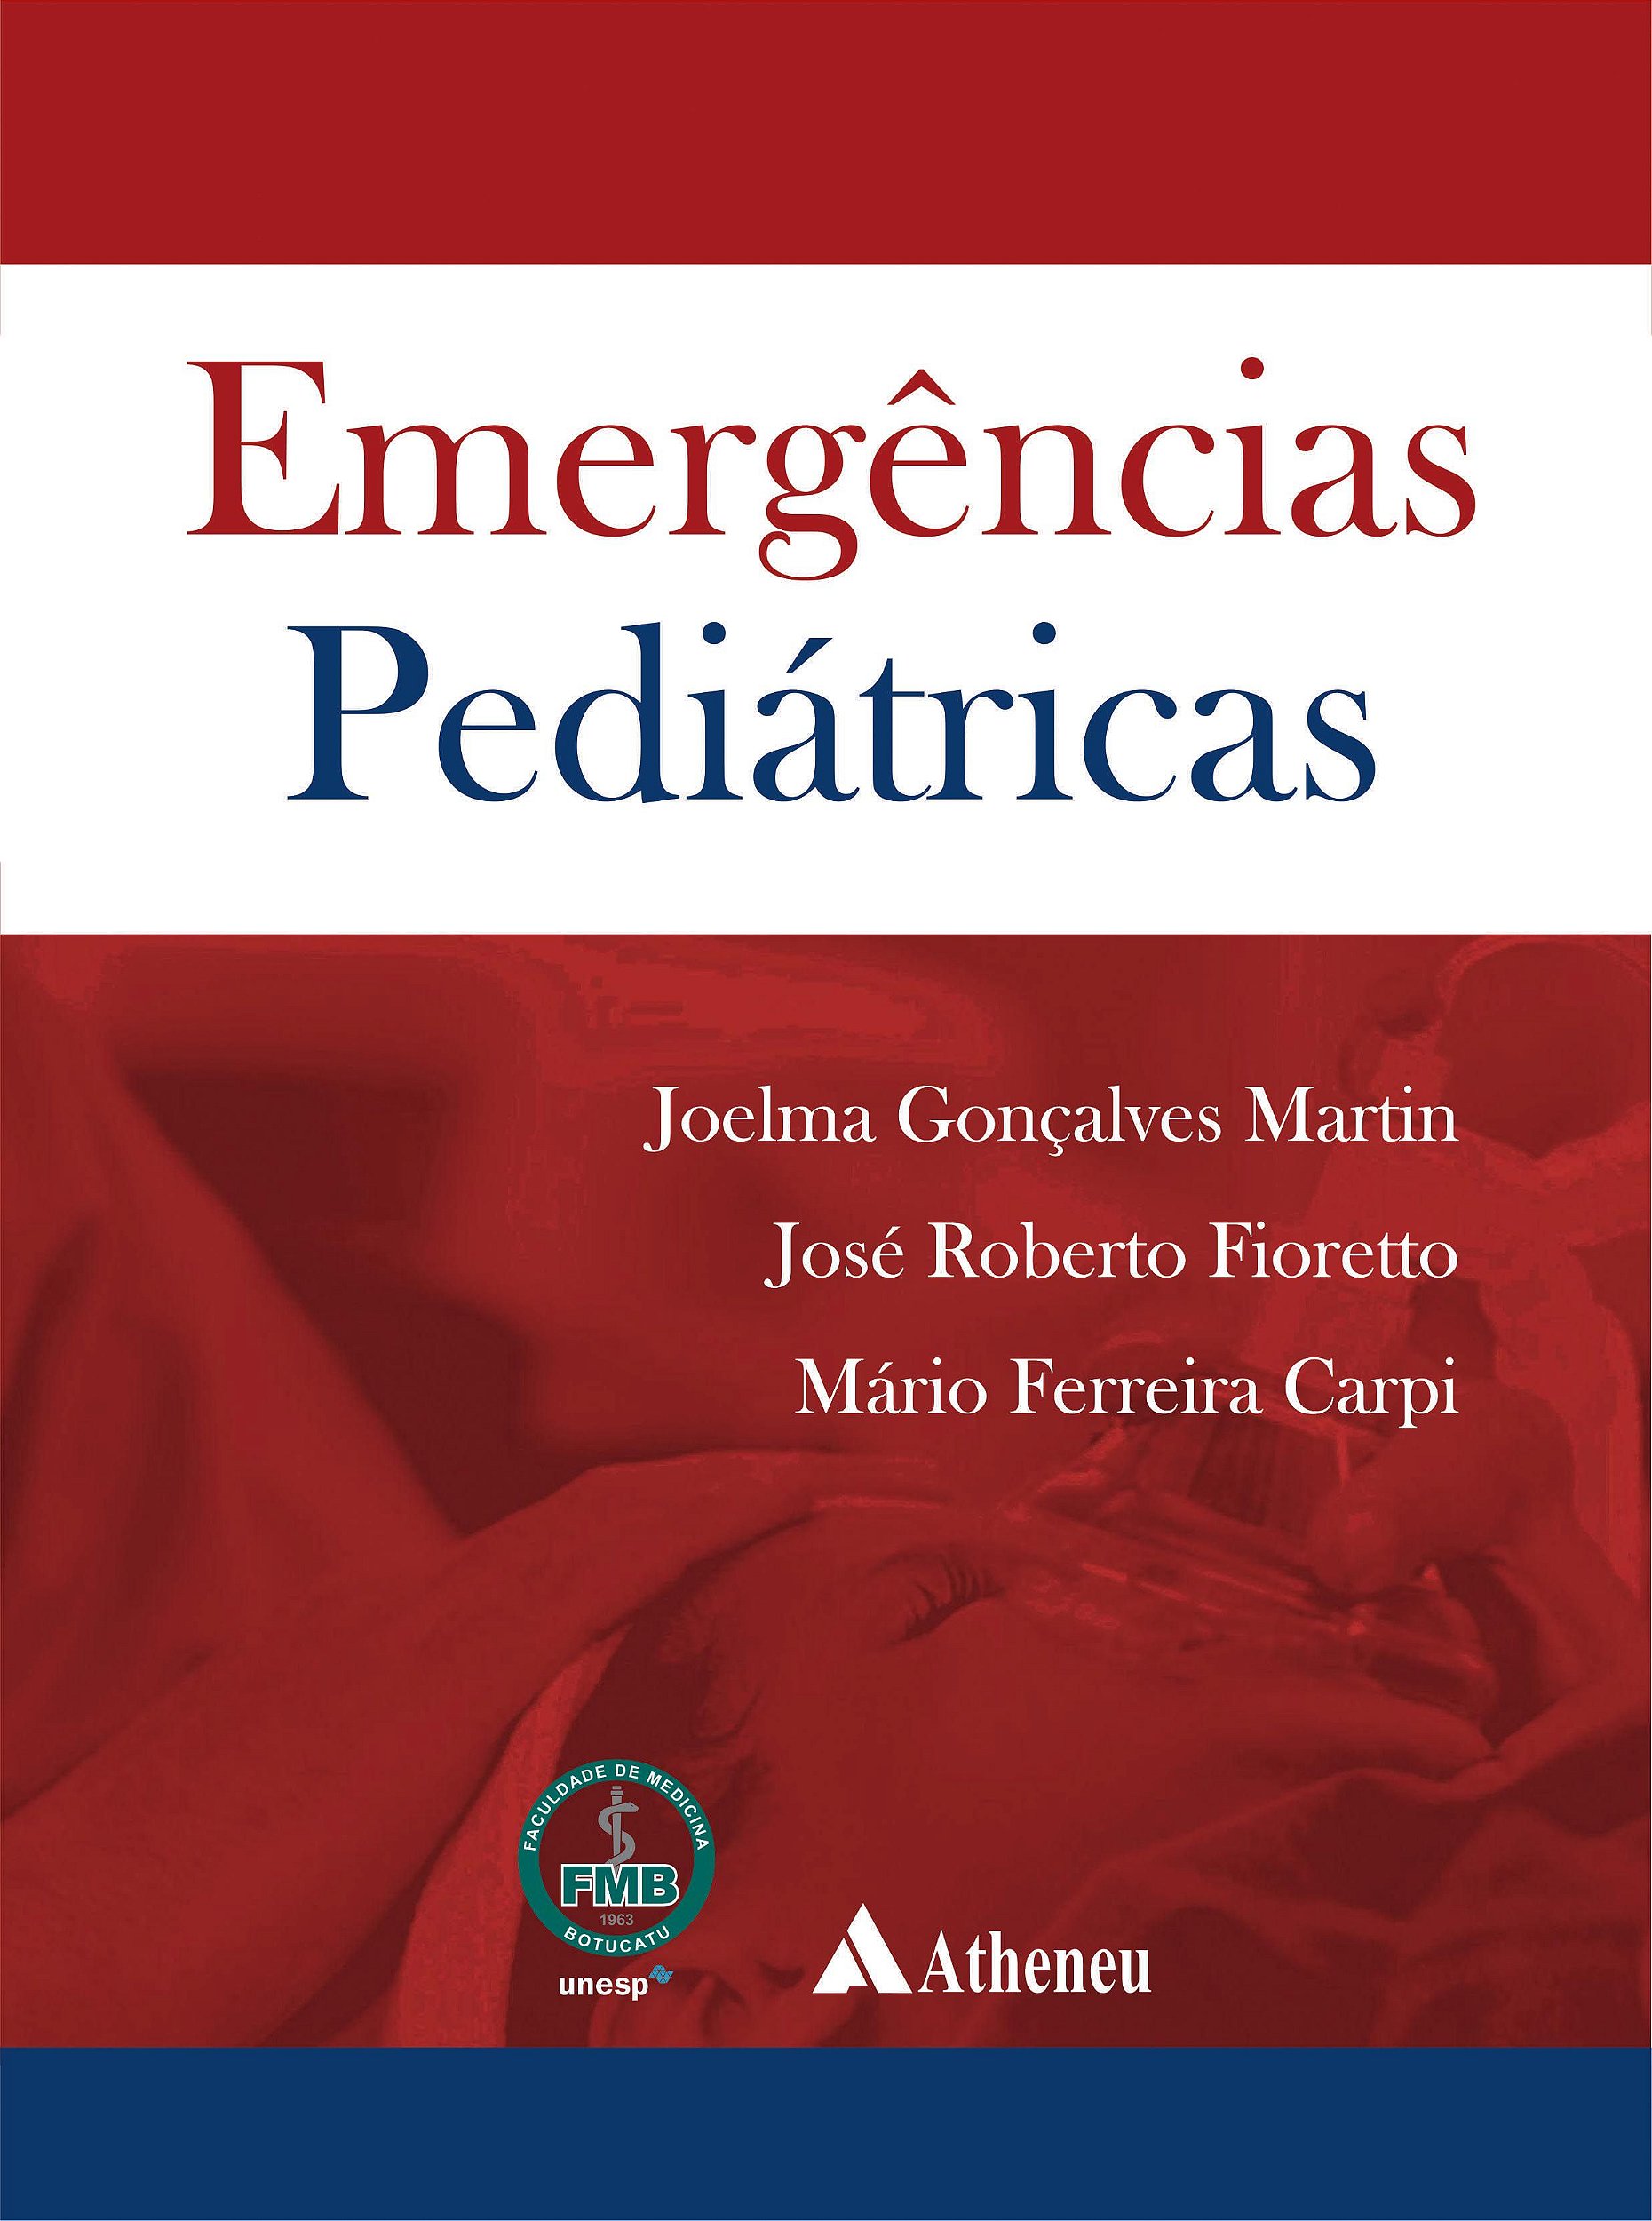 Urgências e Emergências Pediátricas no Dia a Dia by Editora Rubio - Issuu